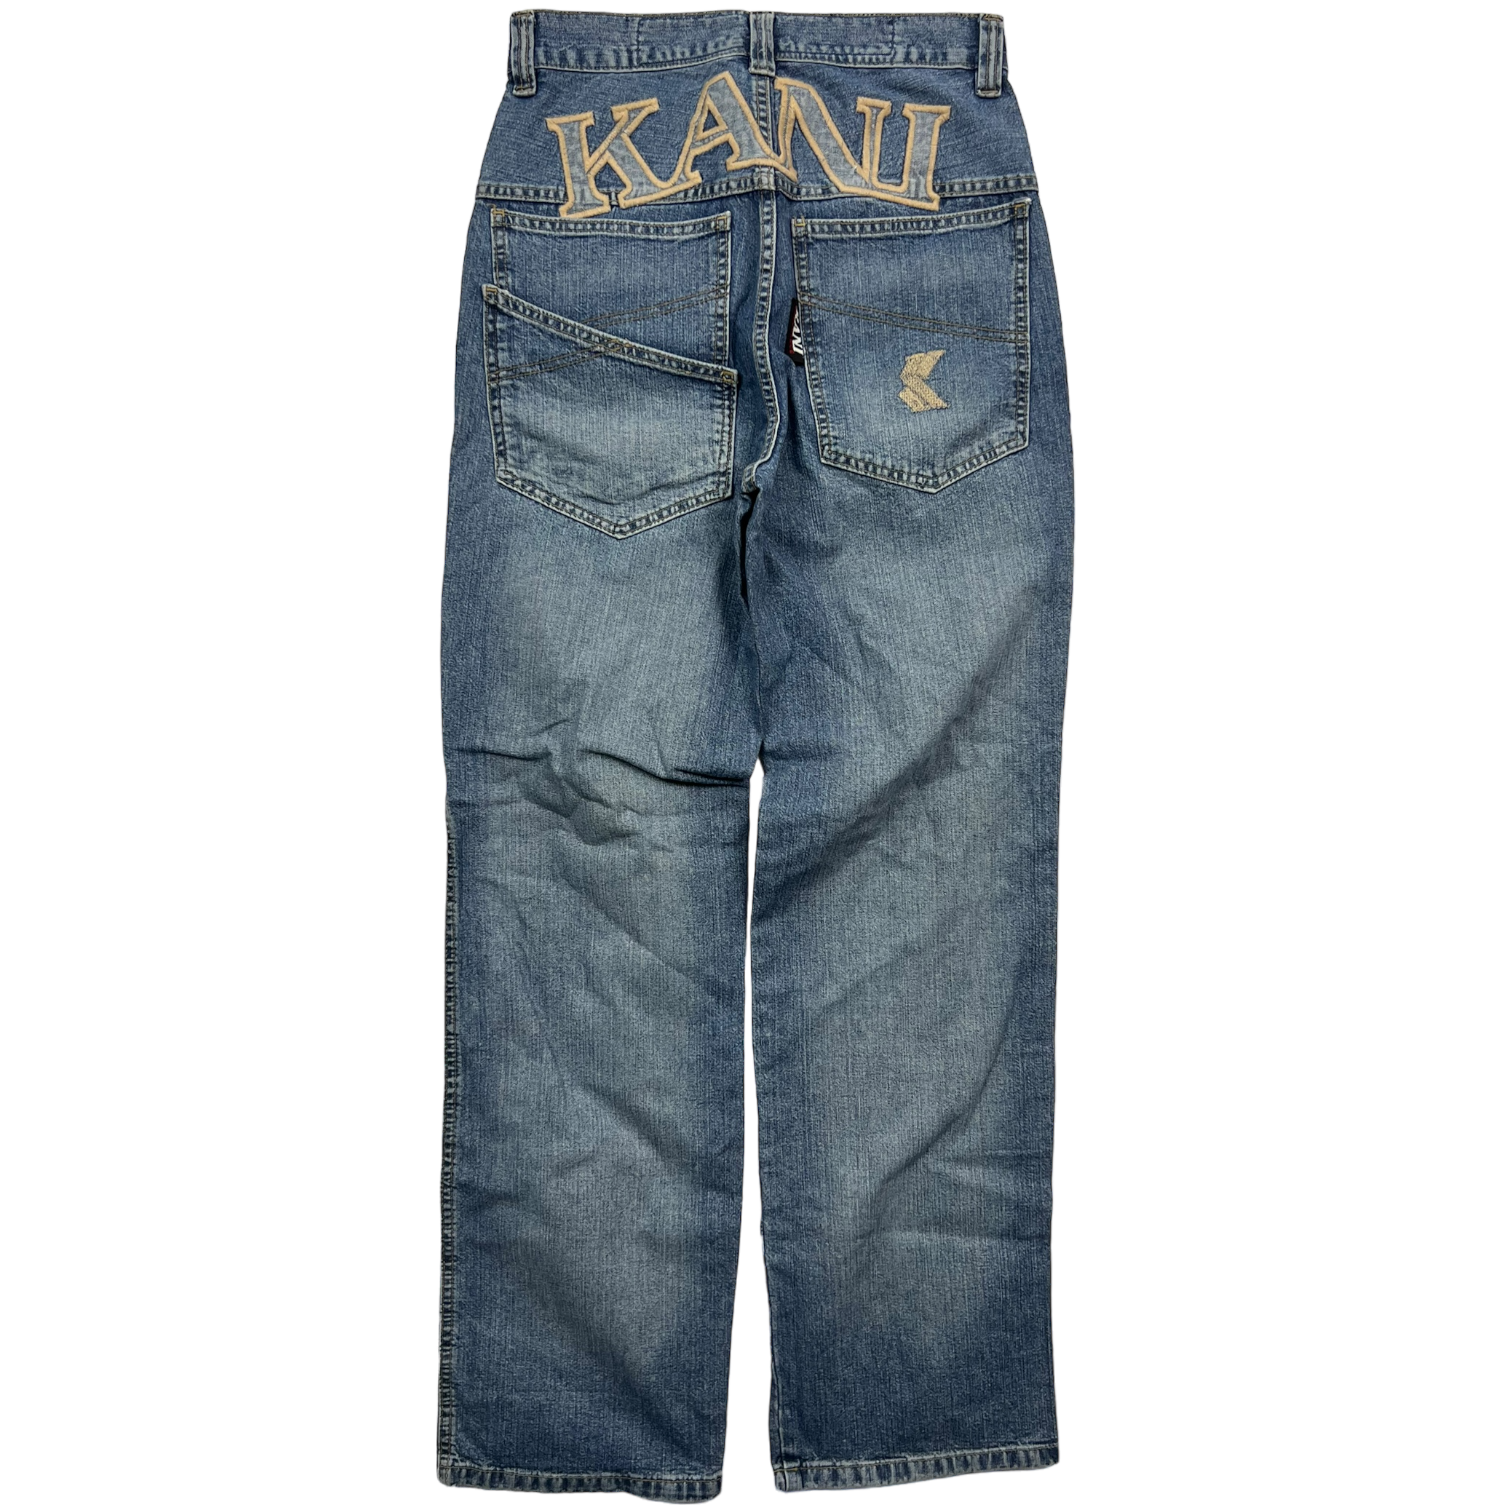 Karl Kani Jeans (29)